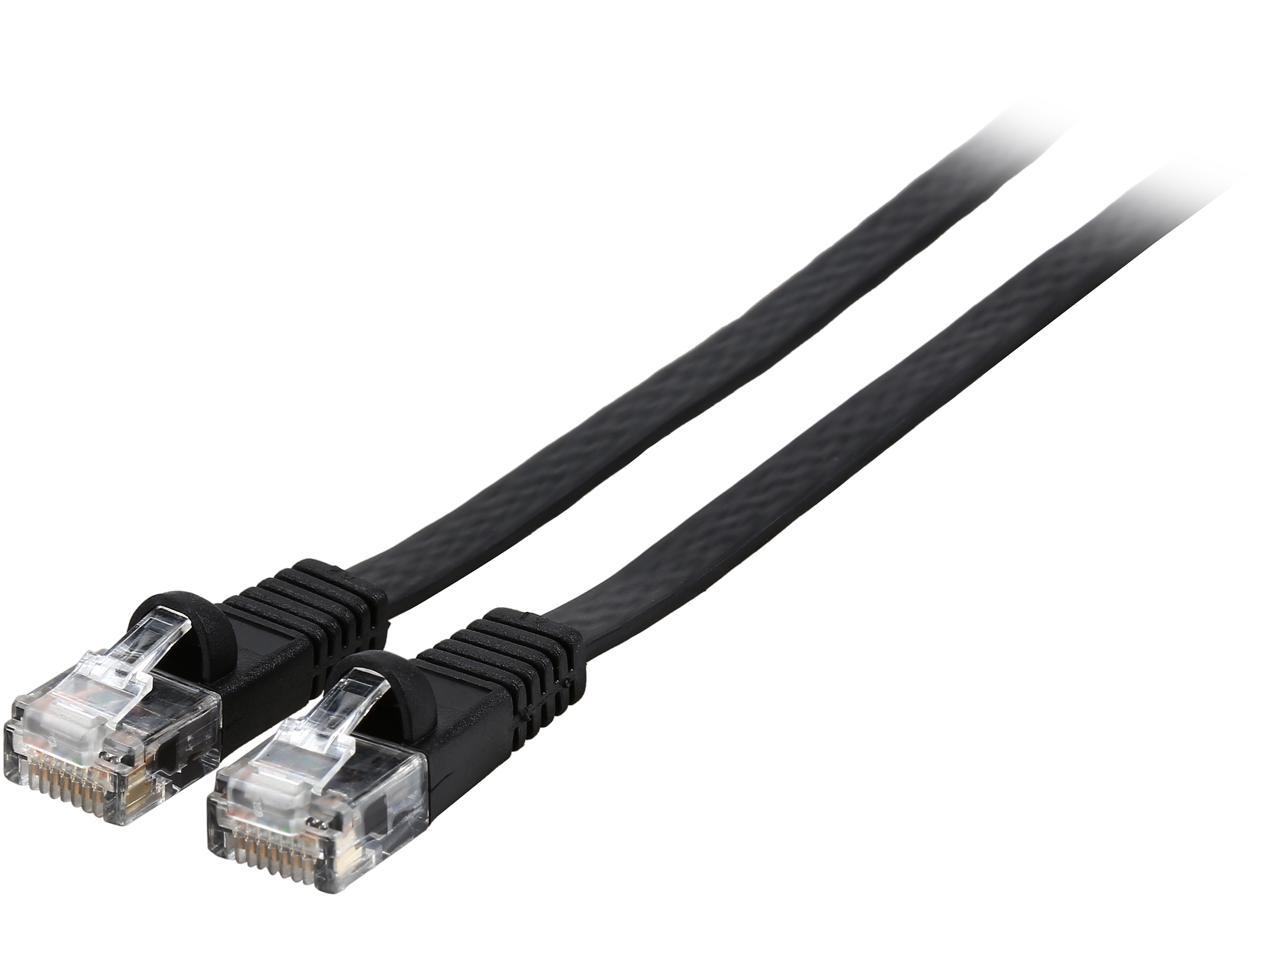 Rosewill 100 pies Cat 5E negro plano 30AWG, cable de conexión Ethernet UTP 350MHZ de cobre trenzado desnudo